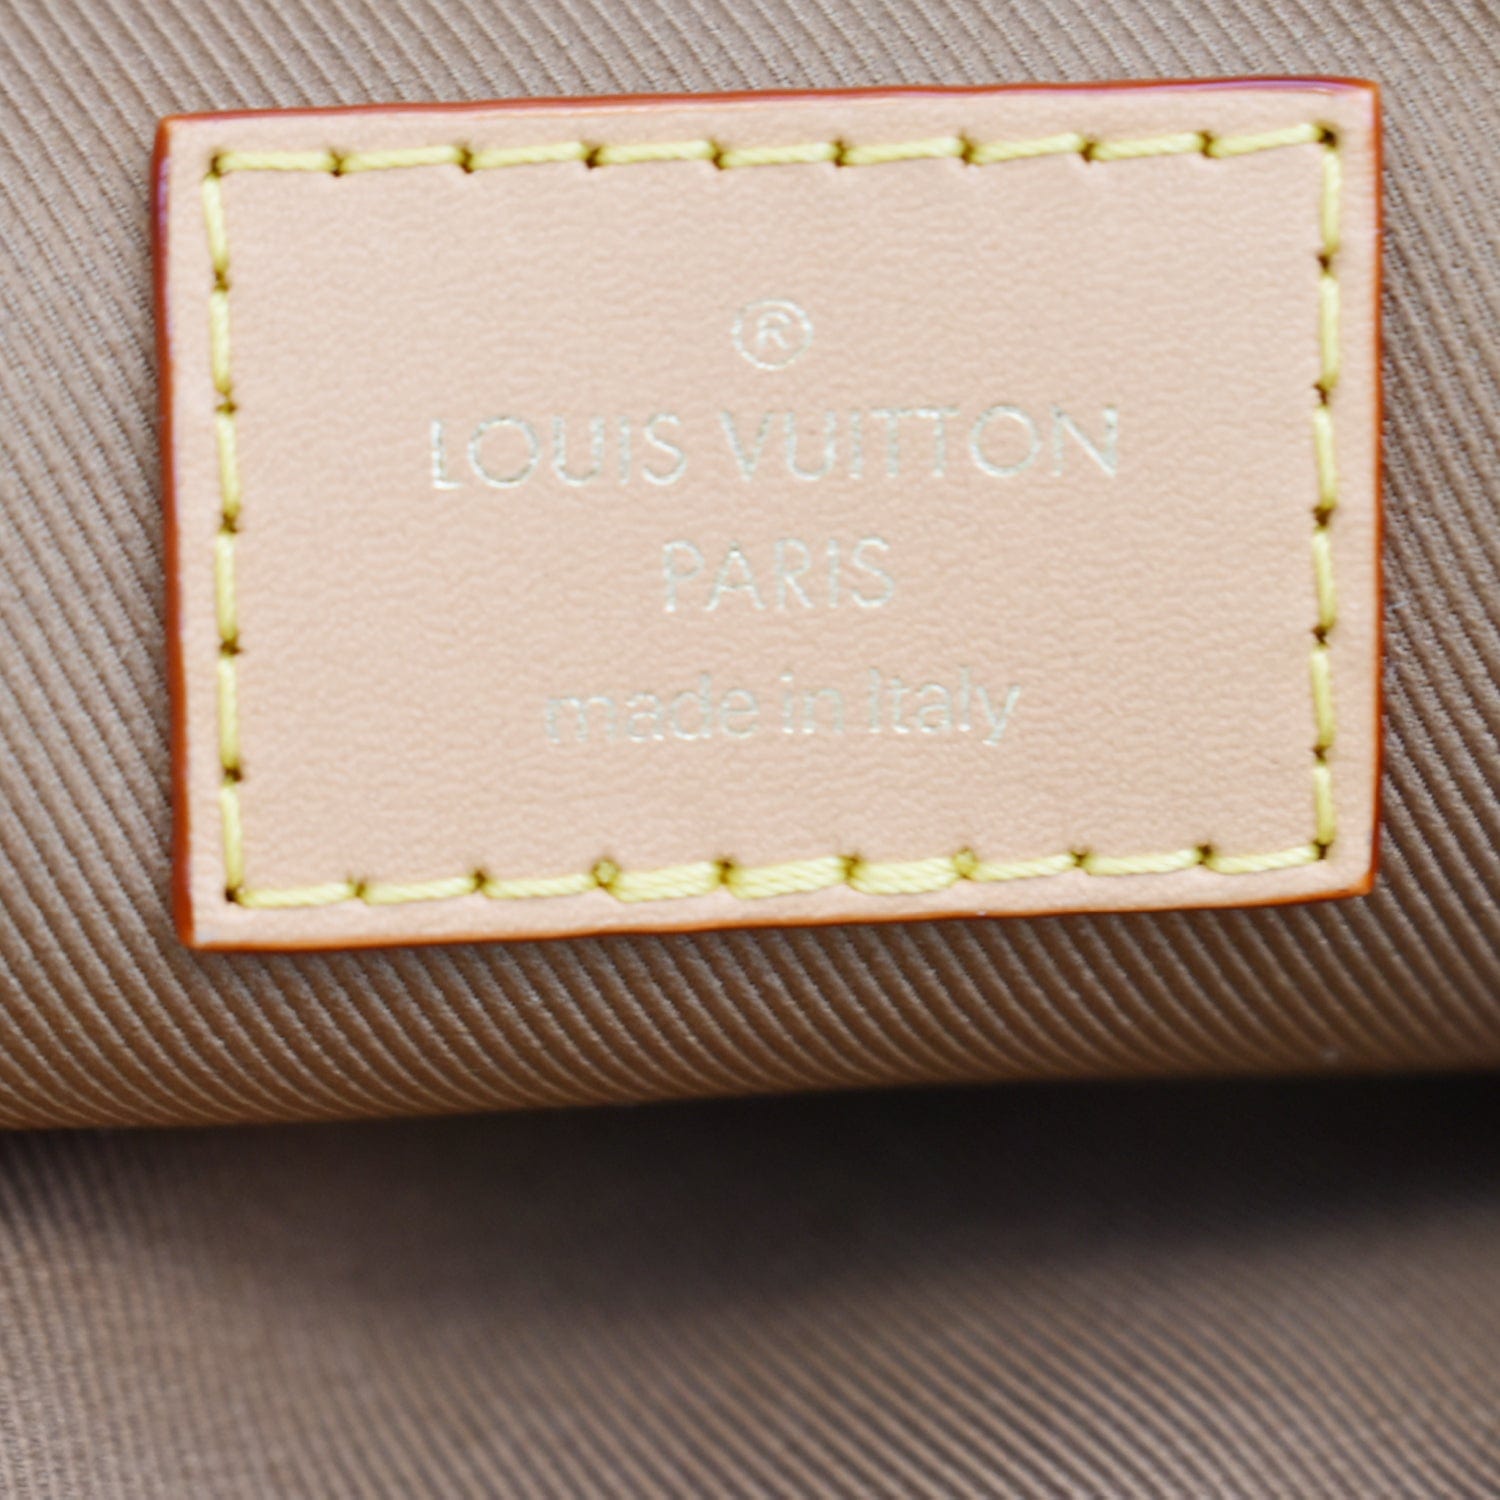 Utility cloth bag Louis Vuitton Brown in Cloth - 31781548